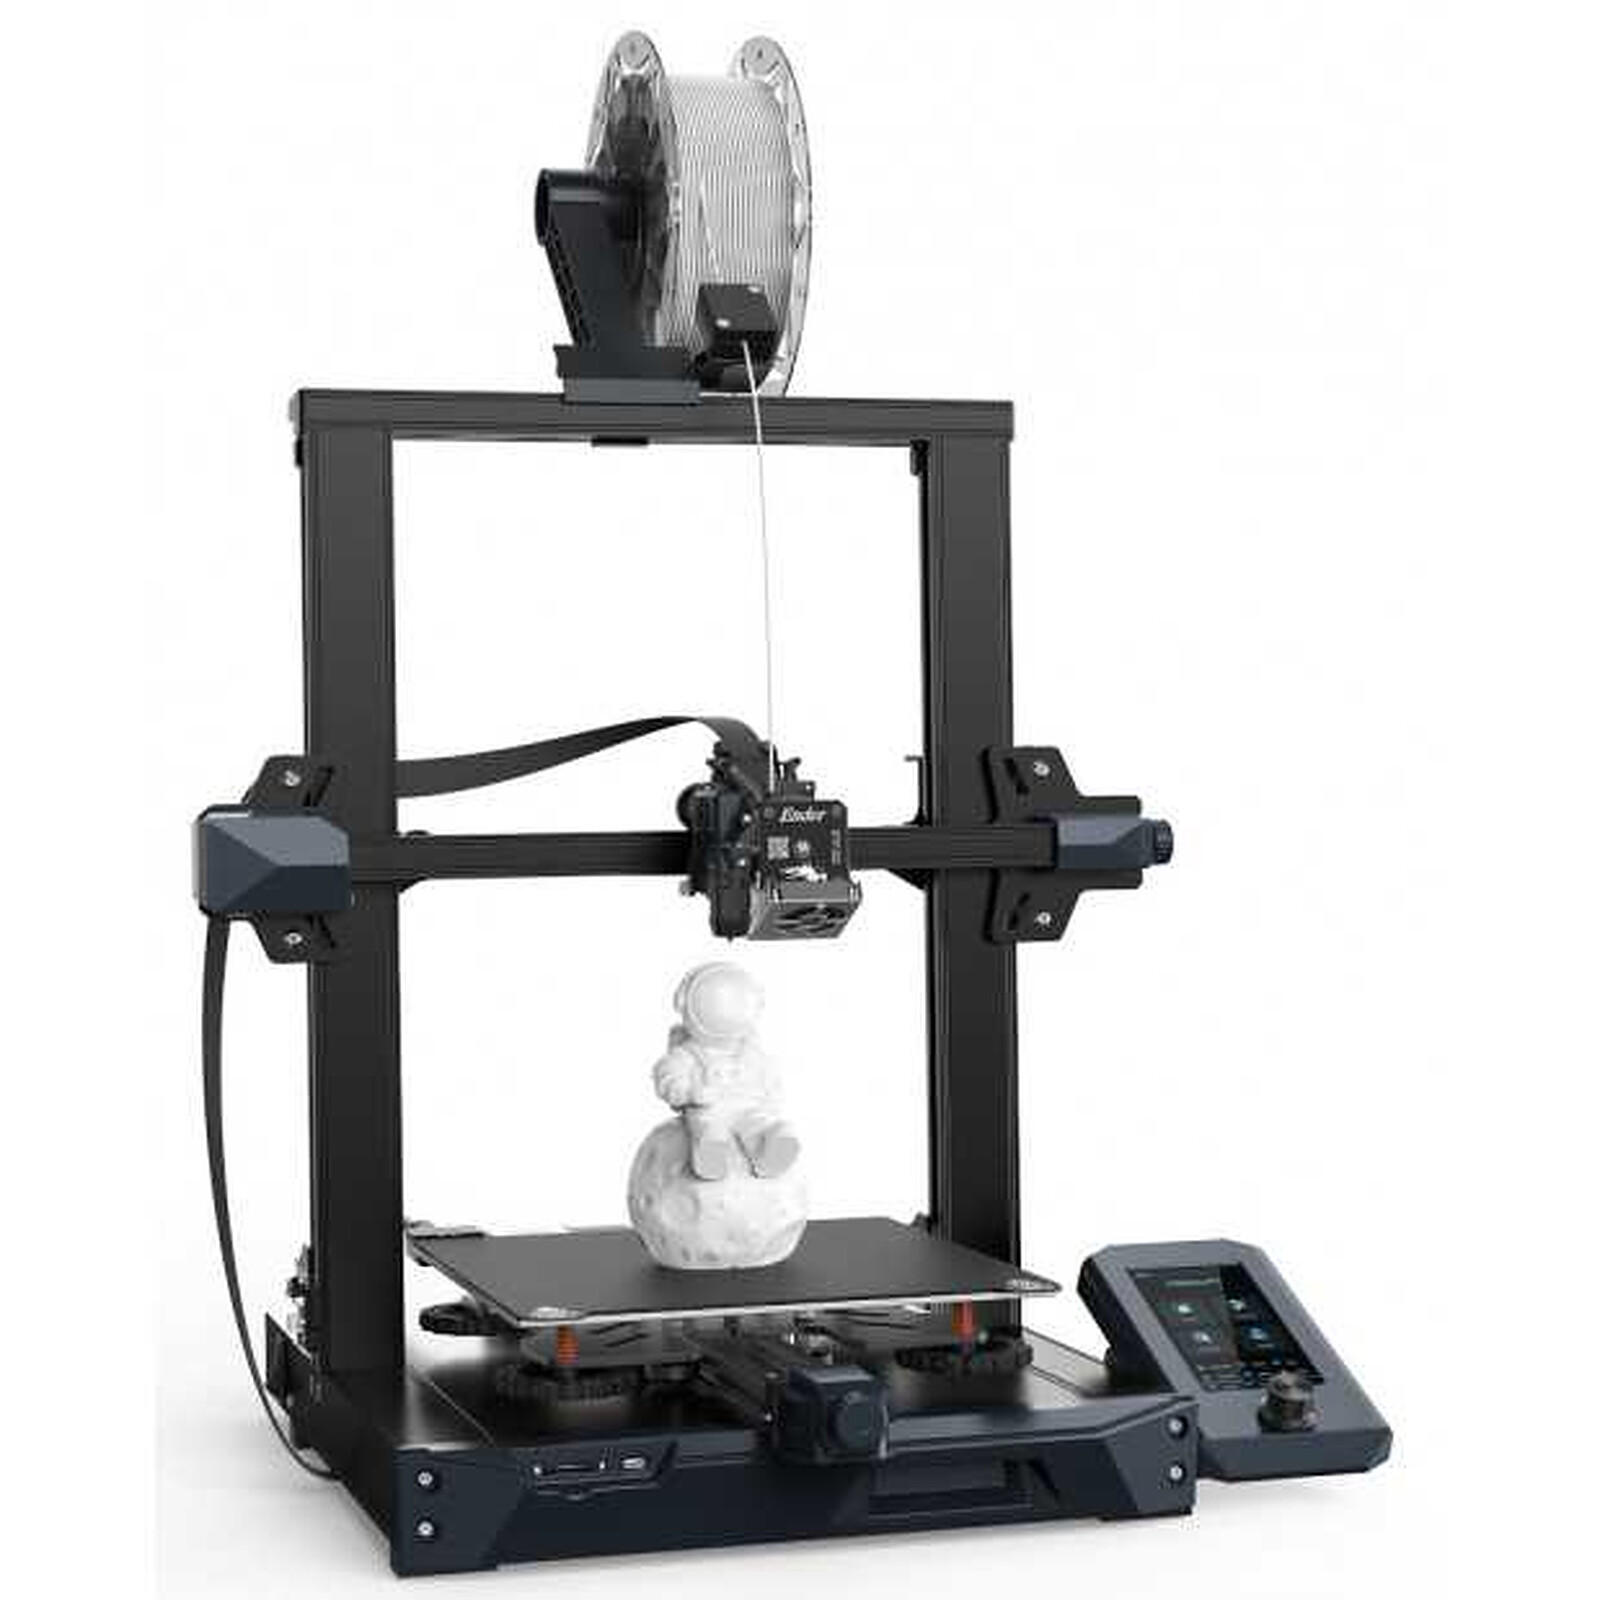 Comment régler le plateau de son imprimante 3D ? — La Nouvelle École